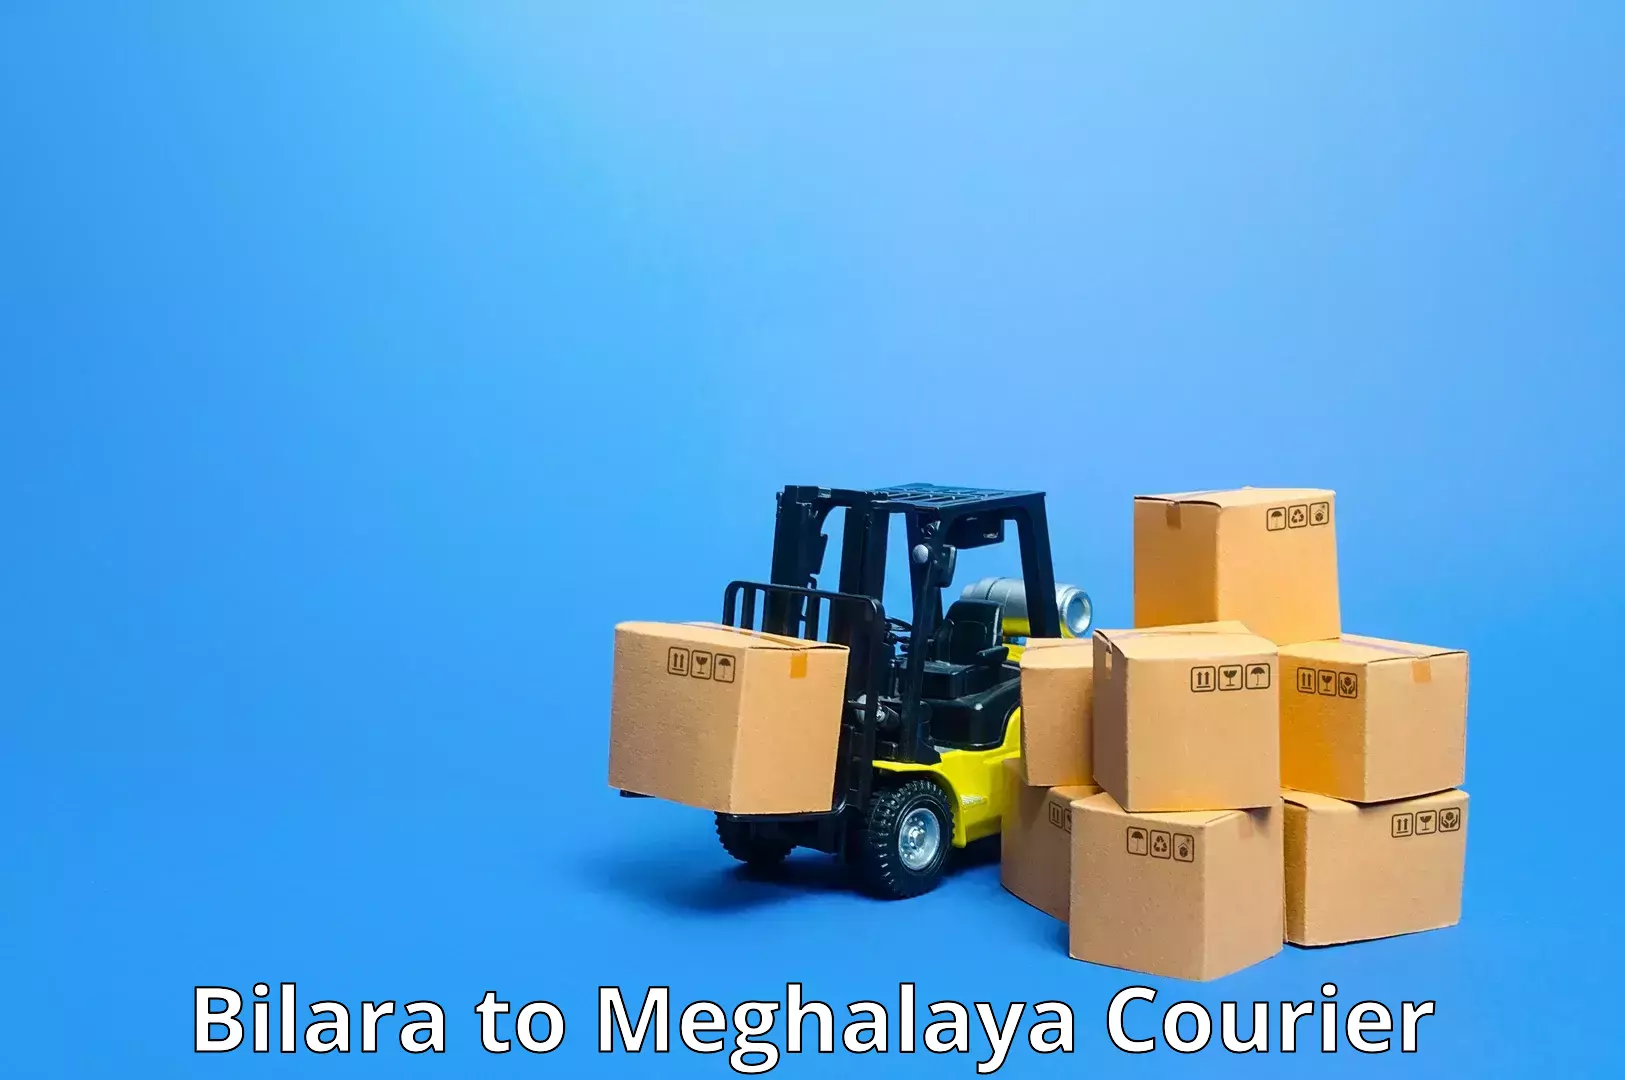 Premium courier services Bilara to Shillong